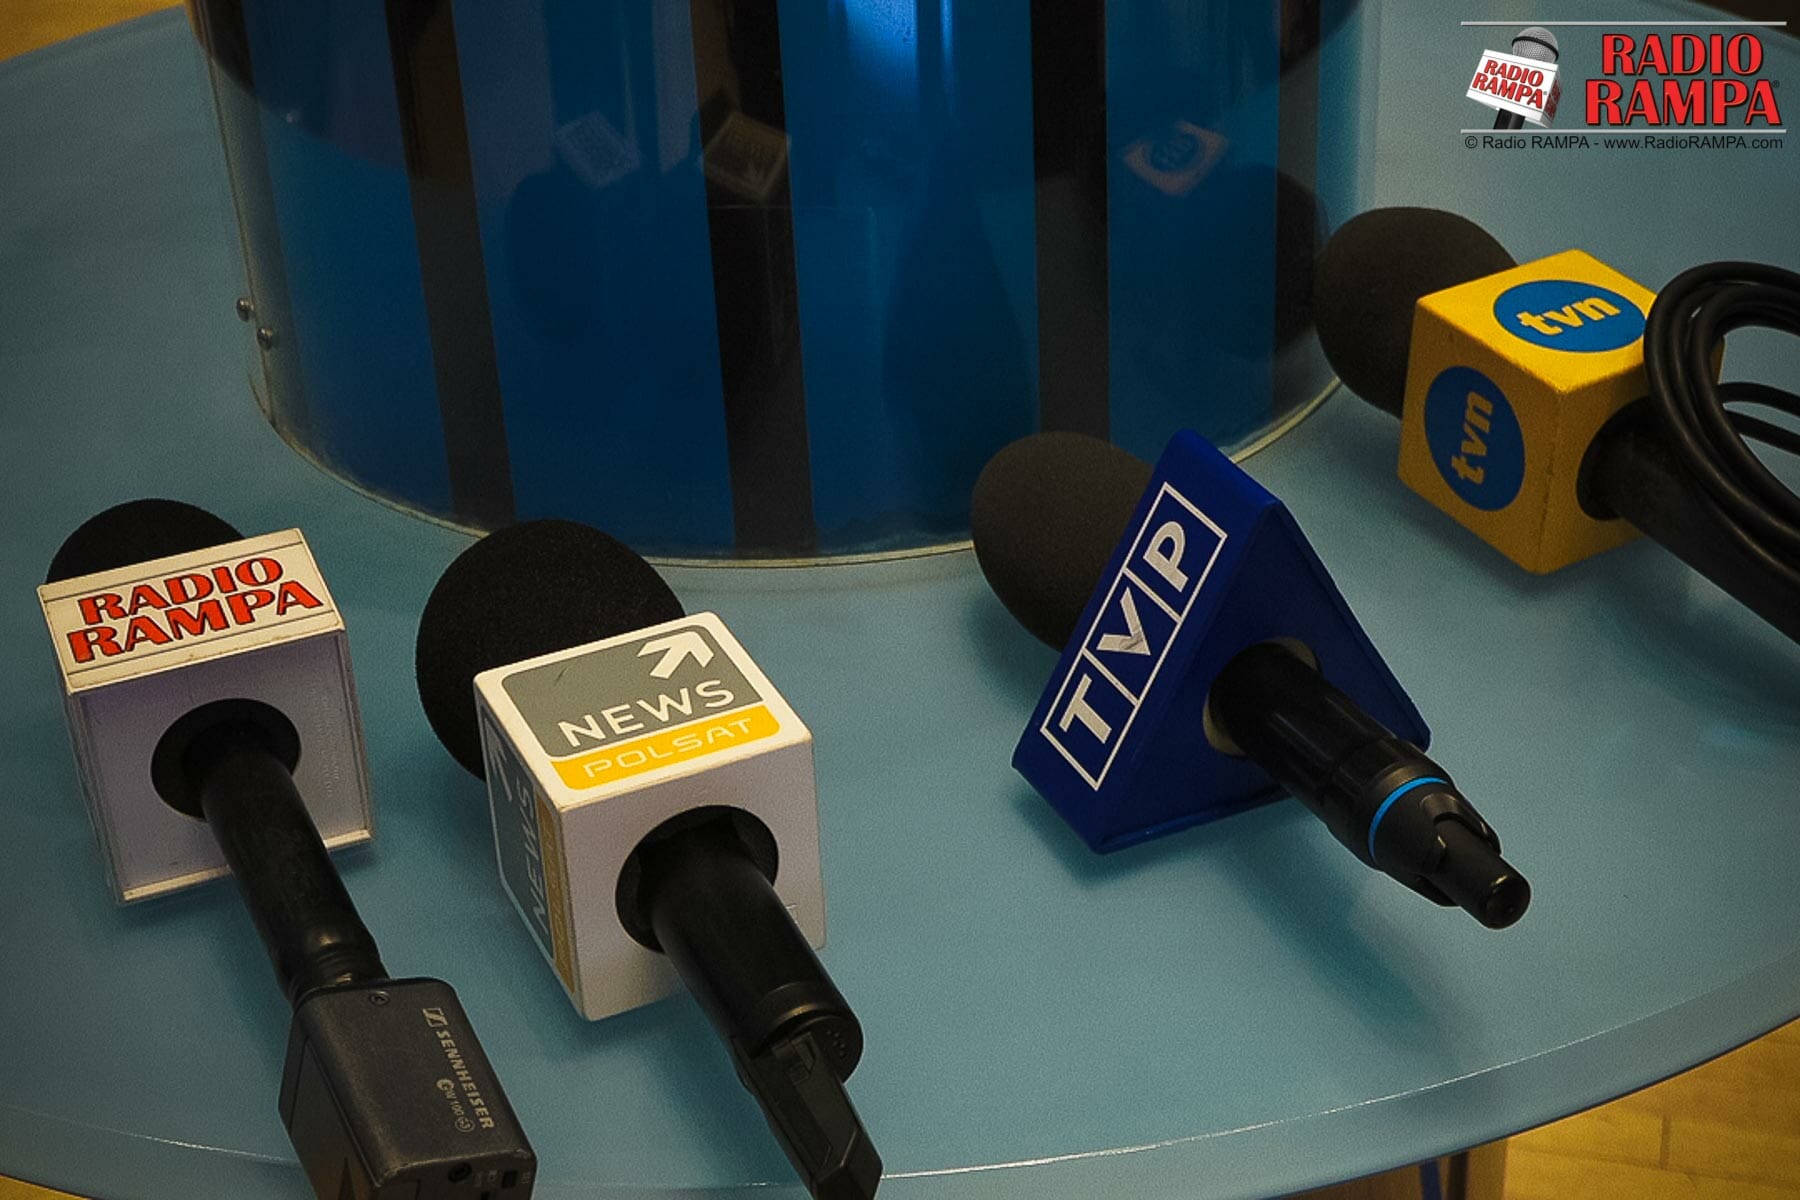 Konferencja prasowa z Prezydentem Andrzejem Dudą w pierwszy dzień wizyty